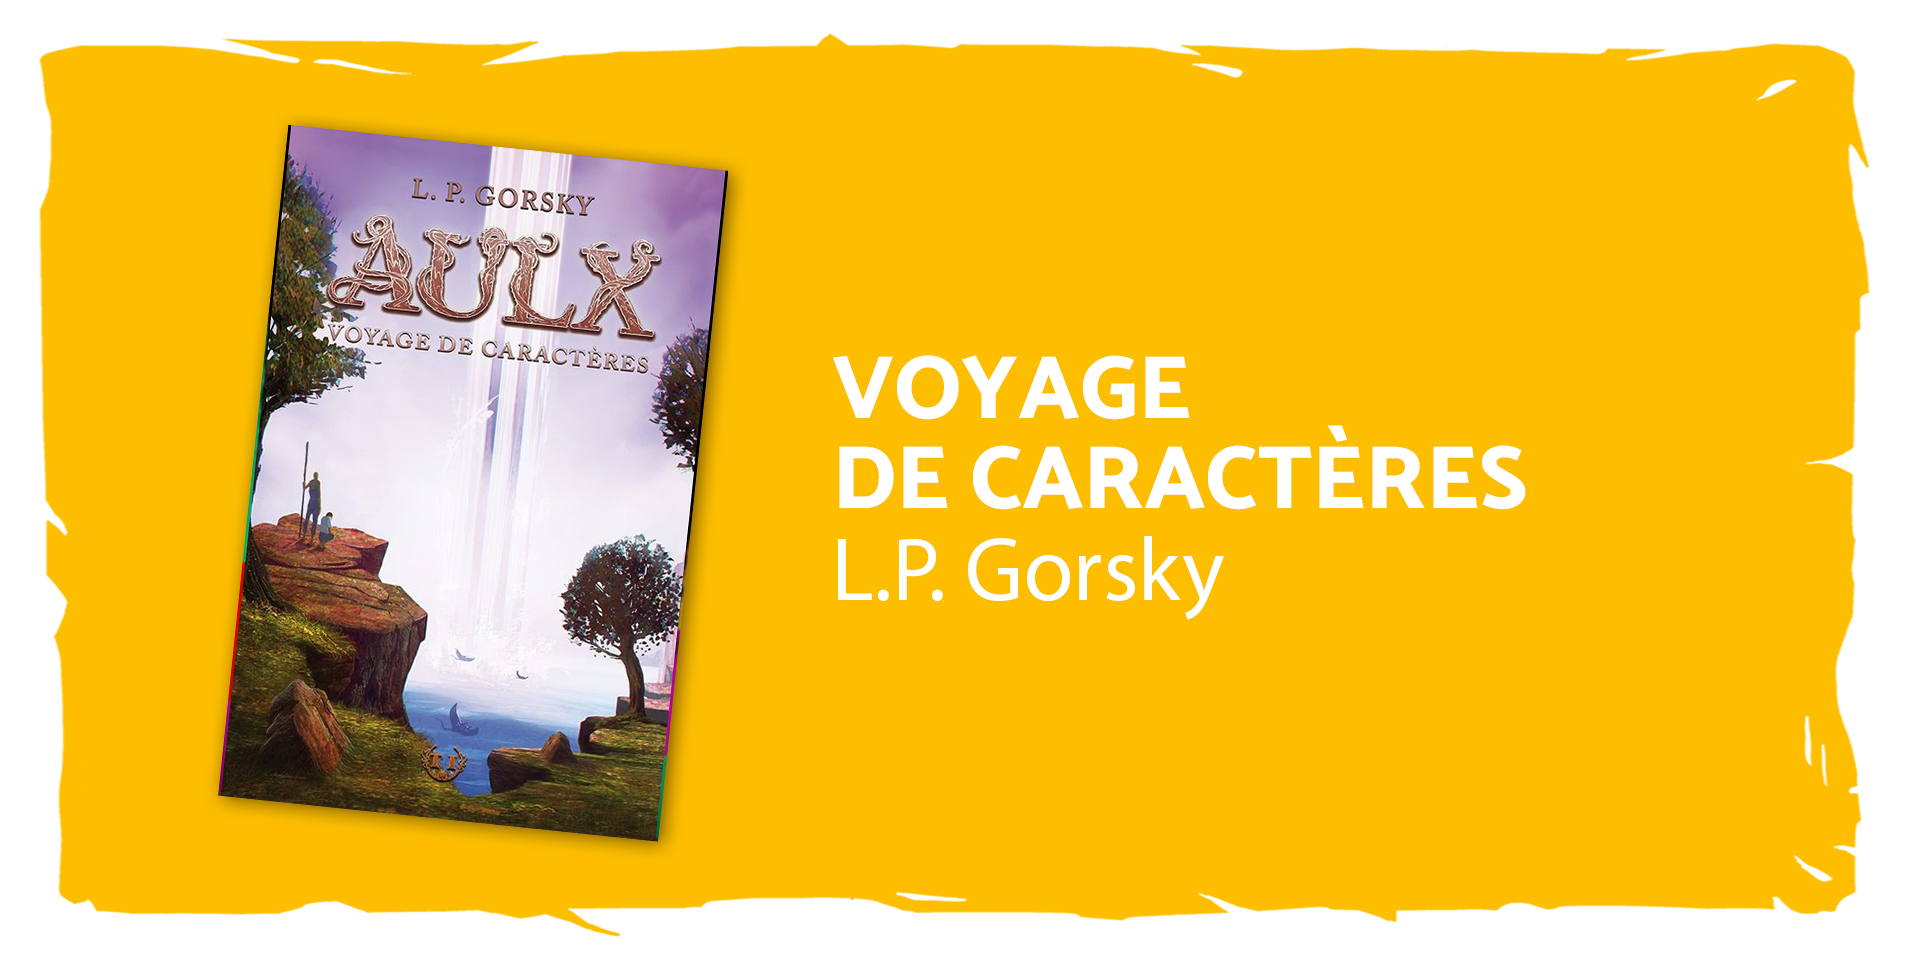 Couverture de Voyage de caractères, de L.P Gorsky